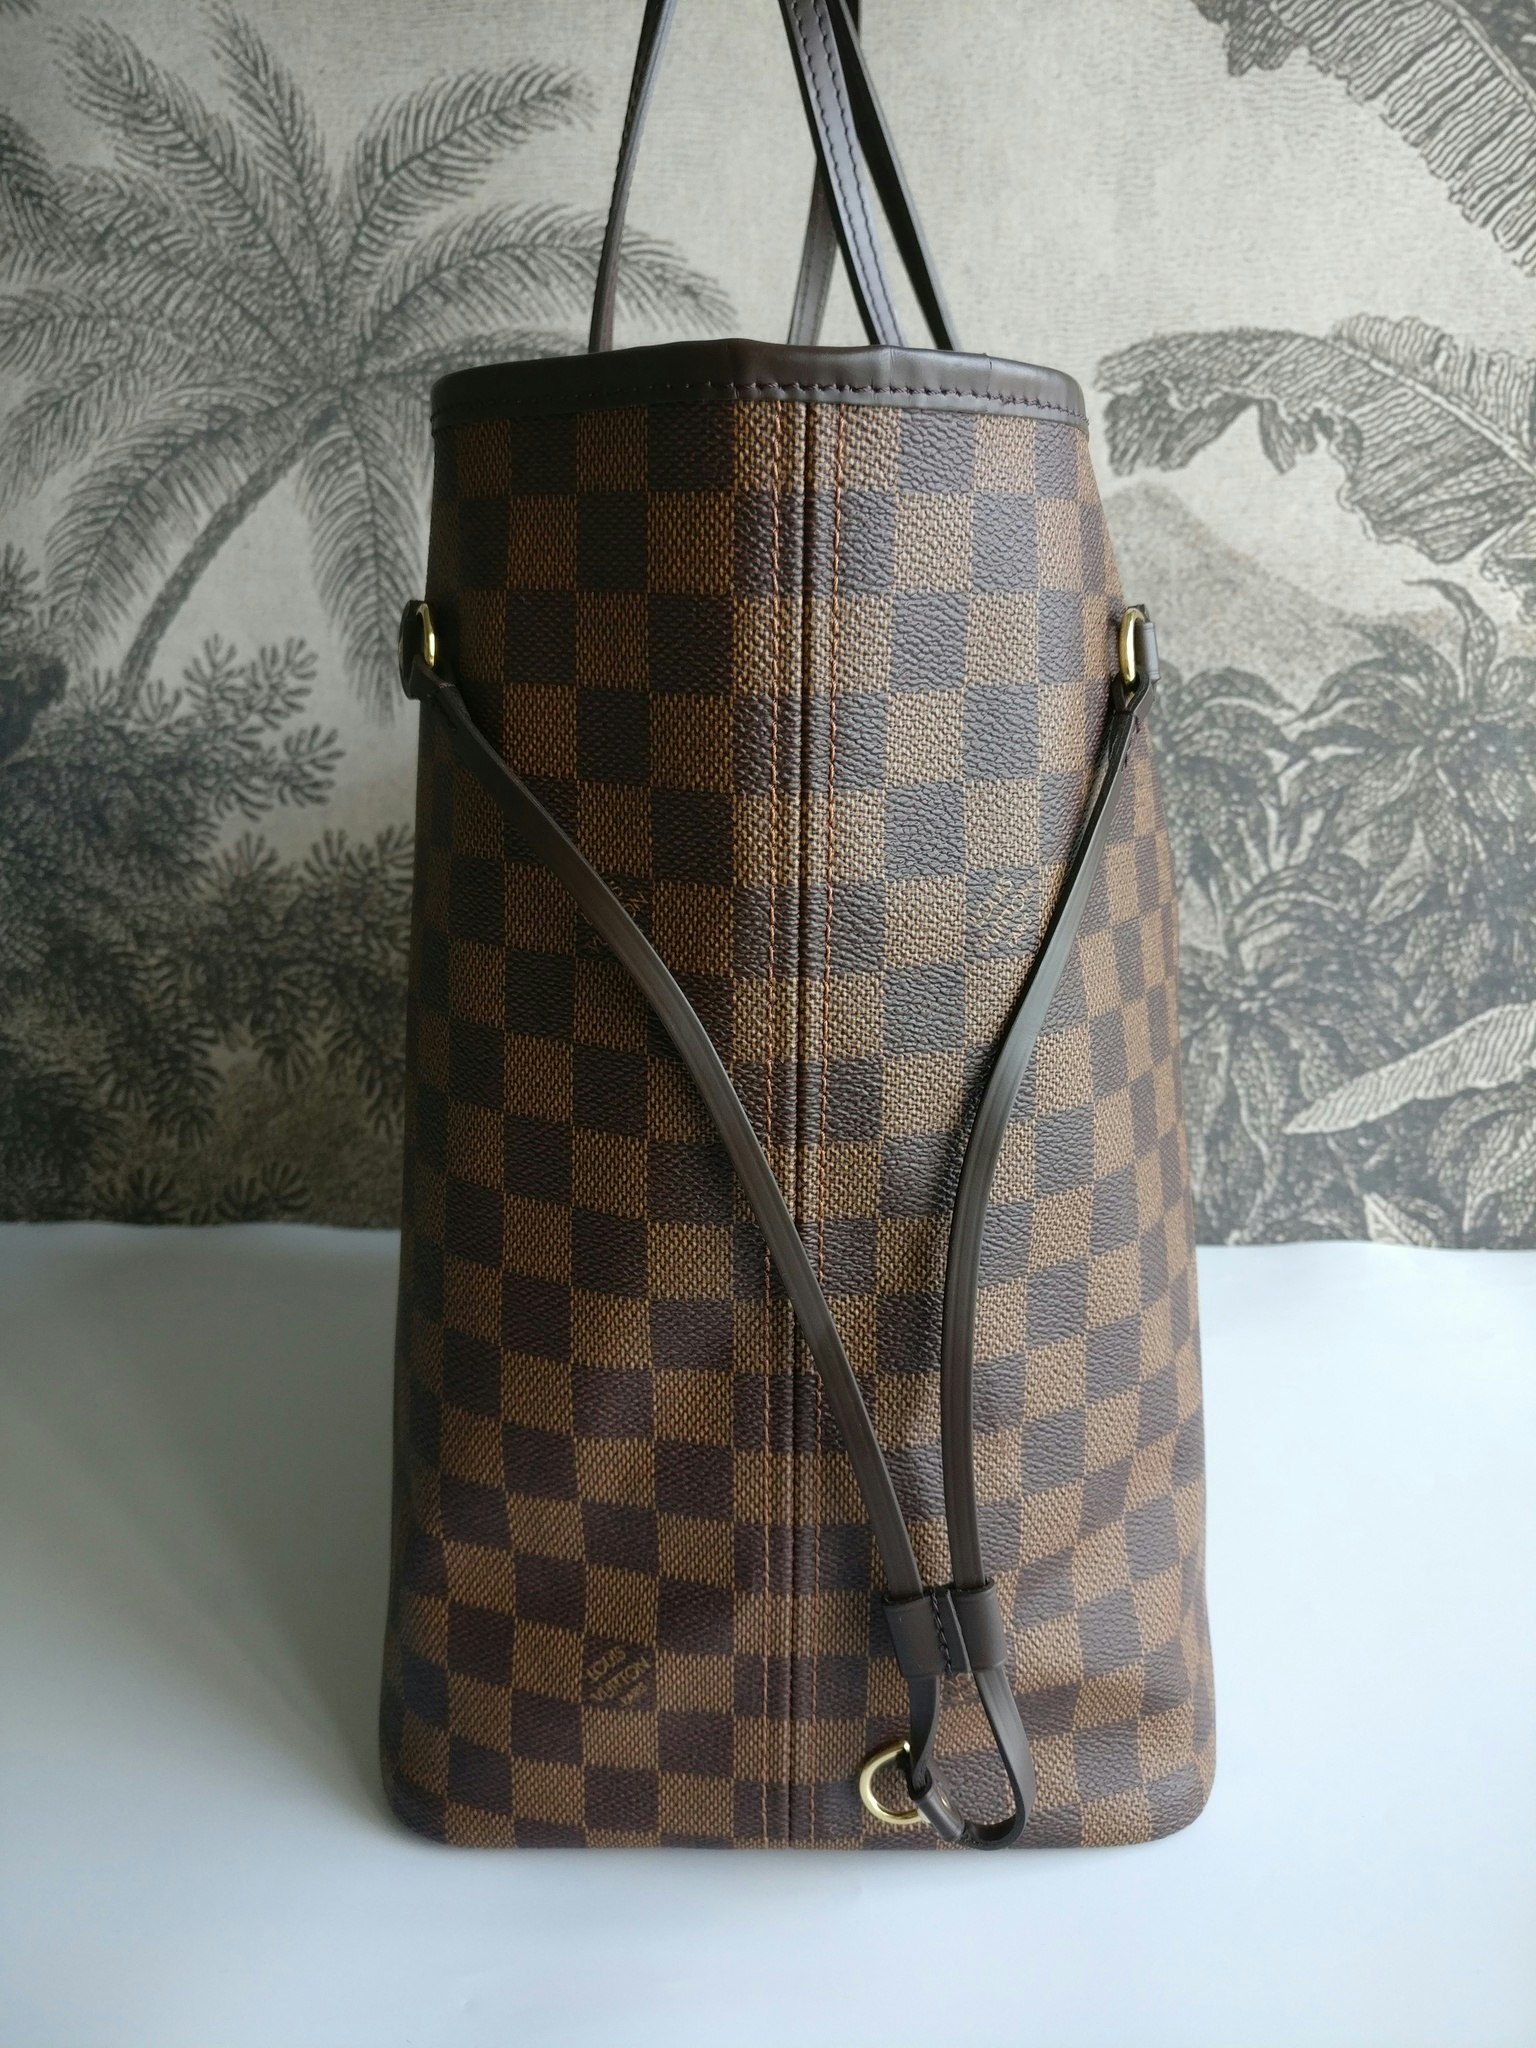 Louis Vuitton Neverfull GM damier ebene - Good or Bag